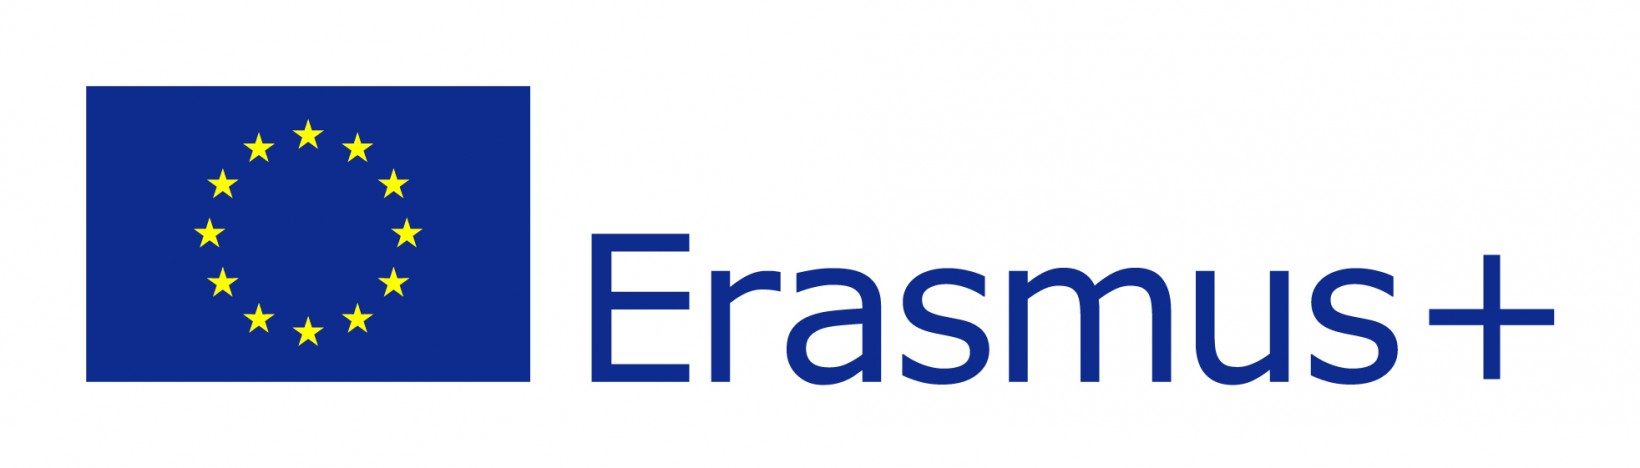 EU flag Erasmus vect POS Αντιγραφή